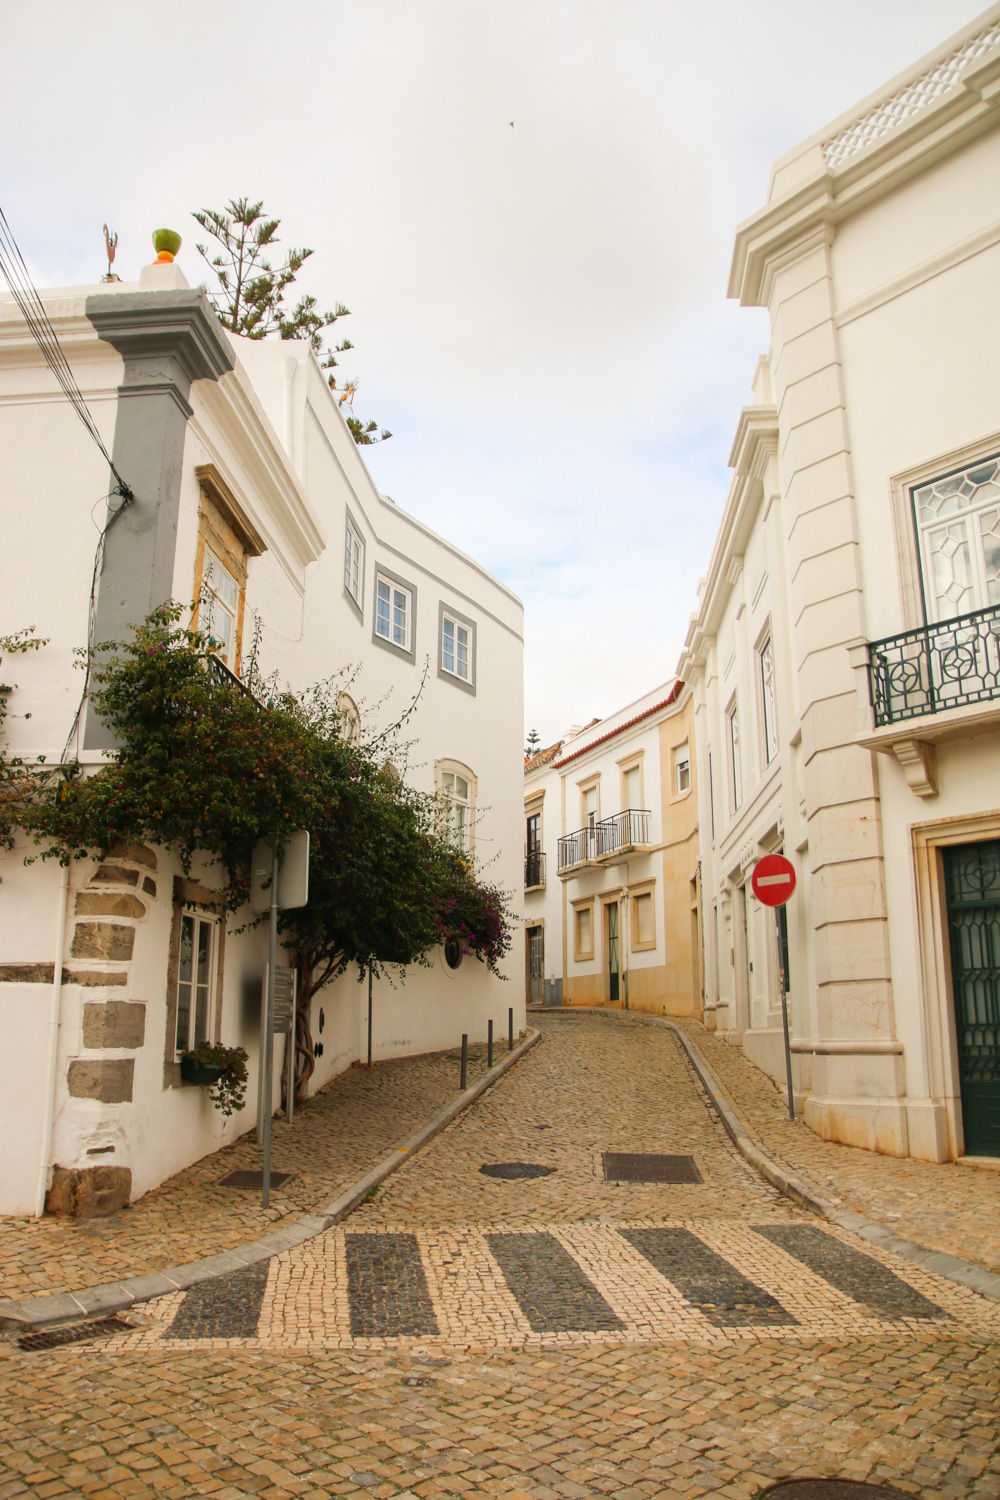 The streets of Tavira, The Algarve in Portugal